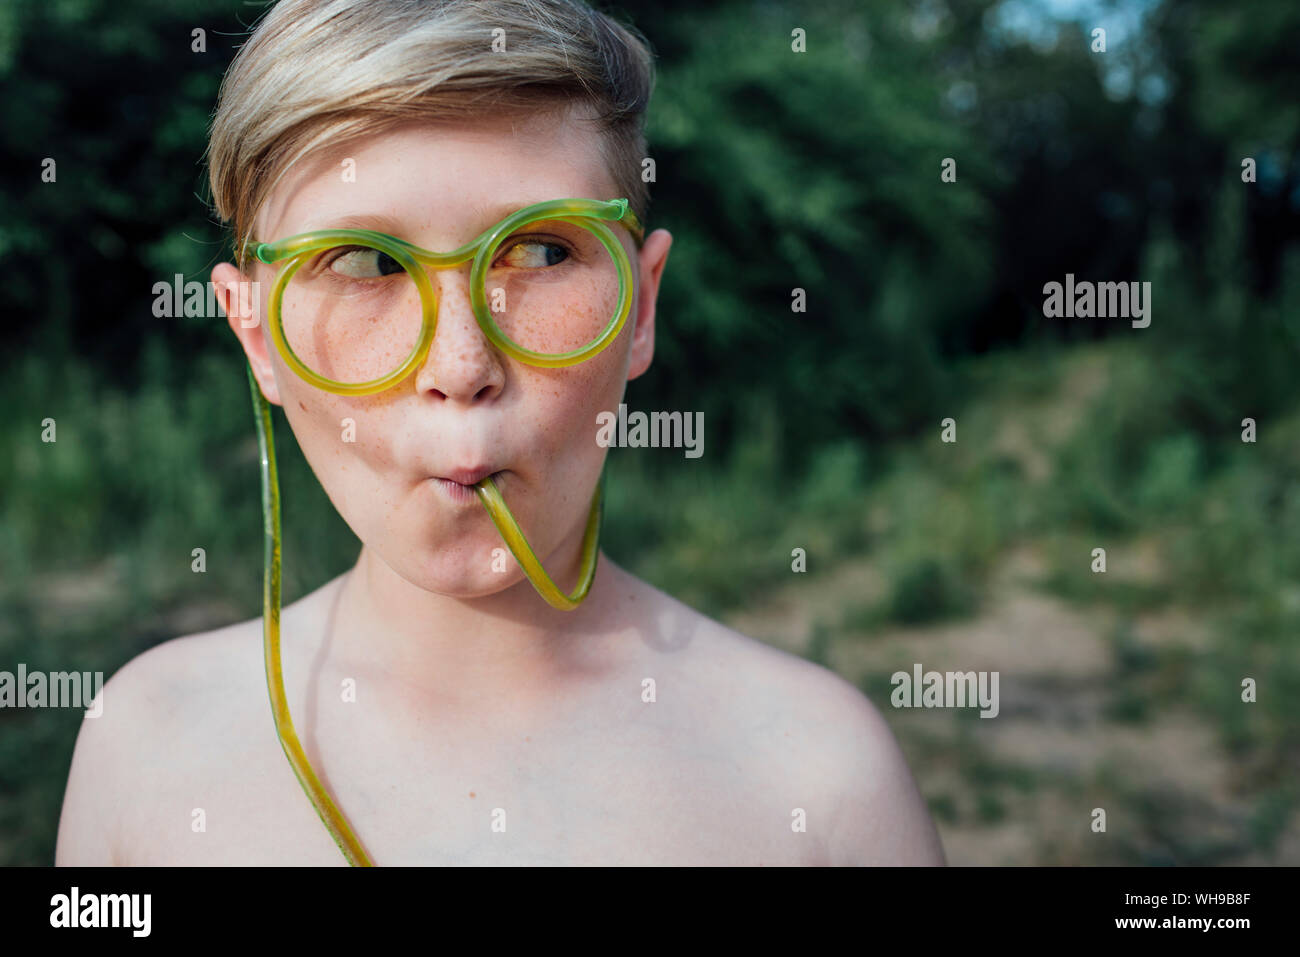 Portrait de garçon drôle de rousseur avec lunettes Banque D'Images